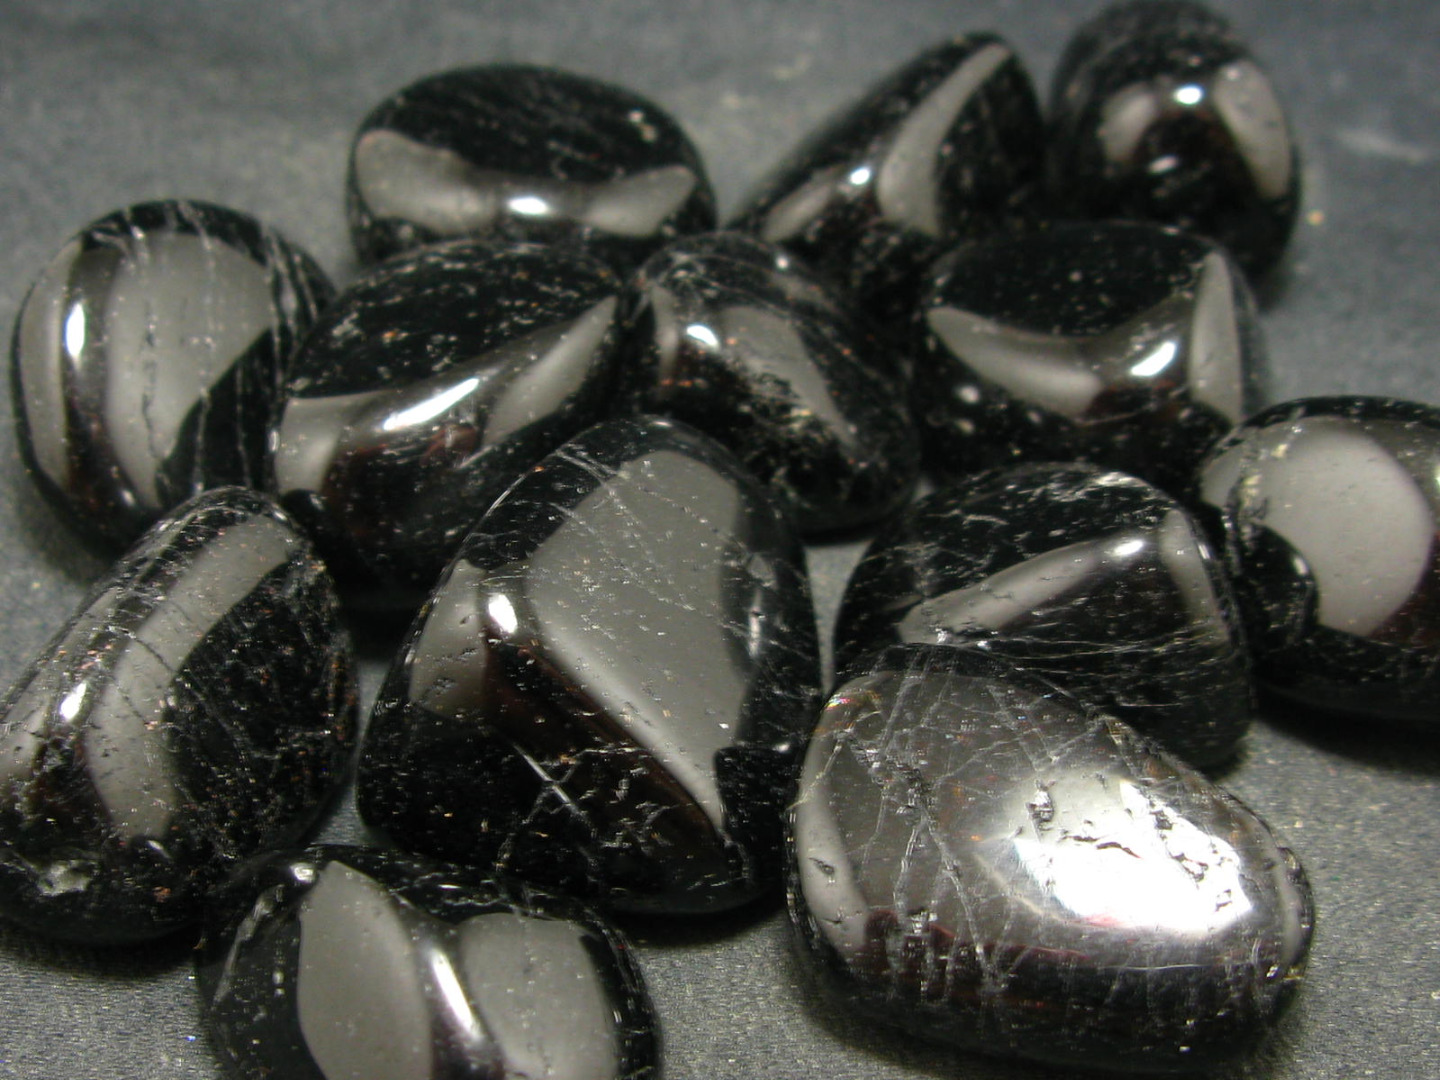 đá sapphire đen cho người sinh năm 1997